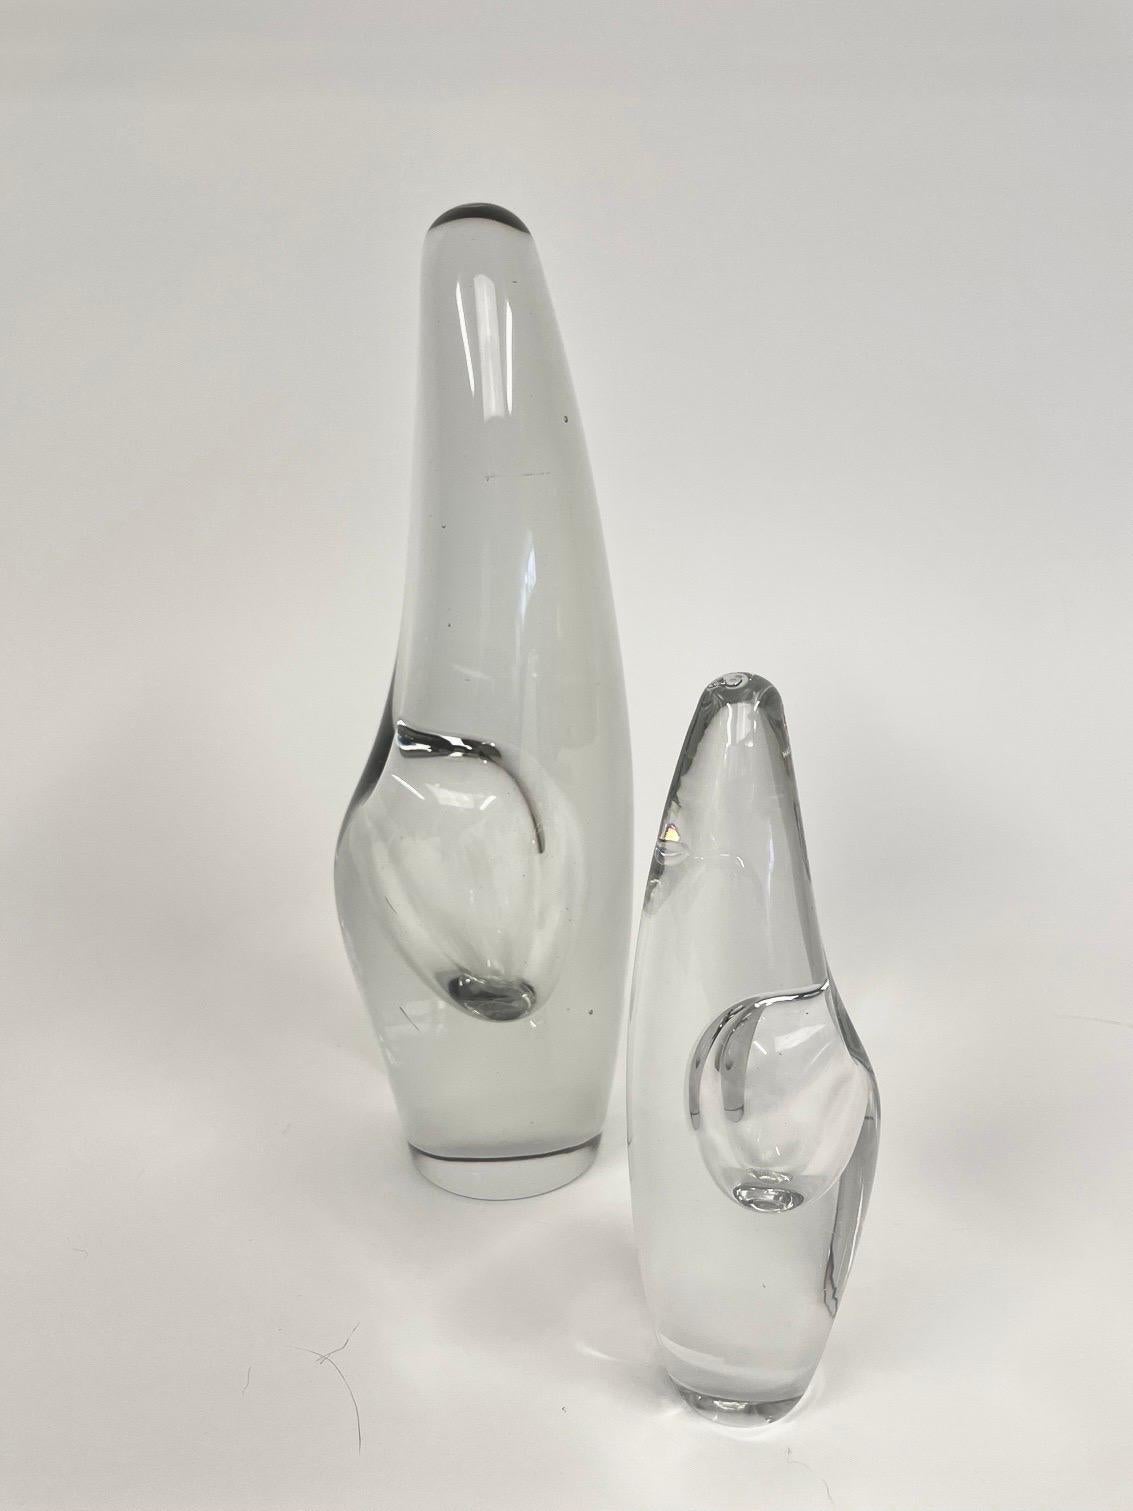 Il s'agit d'une paire de vases sculpturaux finlandais, modèle Design/One 3568 conçu en 1953 en verre de cristal poli d'Ittala.
Ils ont une forme de tour, une forme effilée avec un sommet légèrement arrondi. Un renfoncement soufflé à la vapeur au